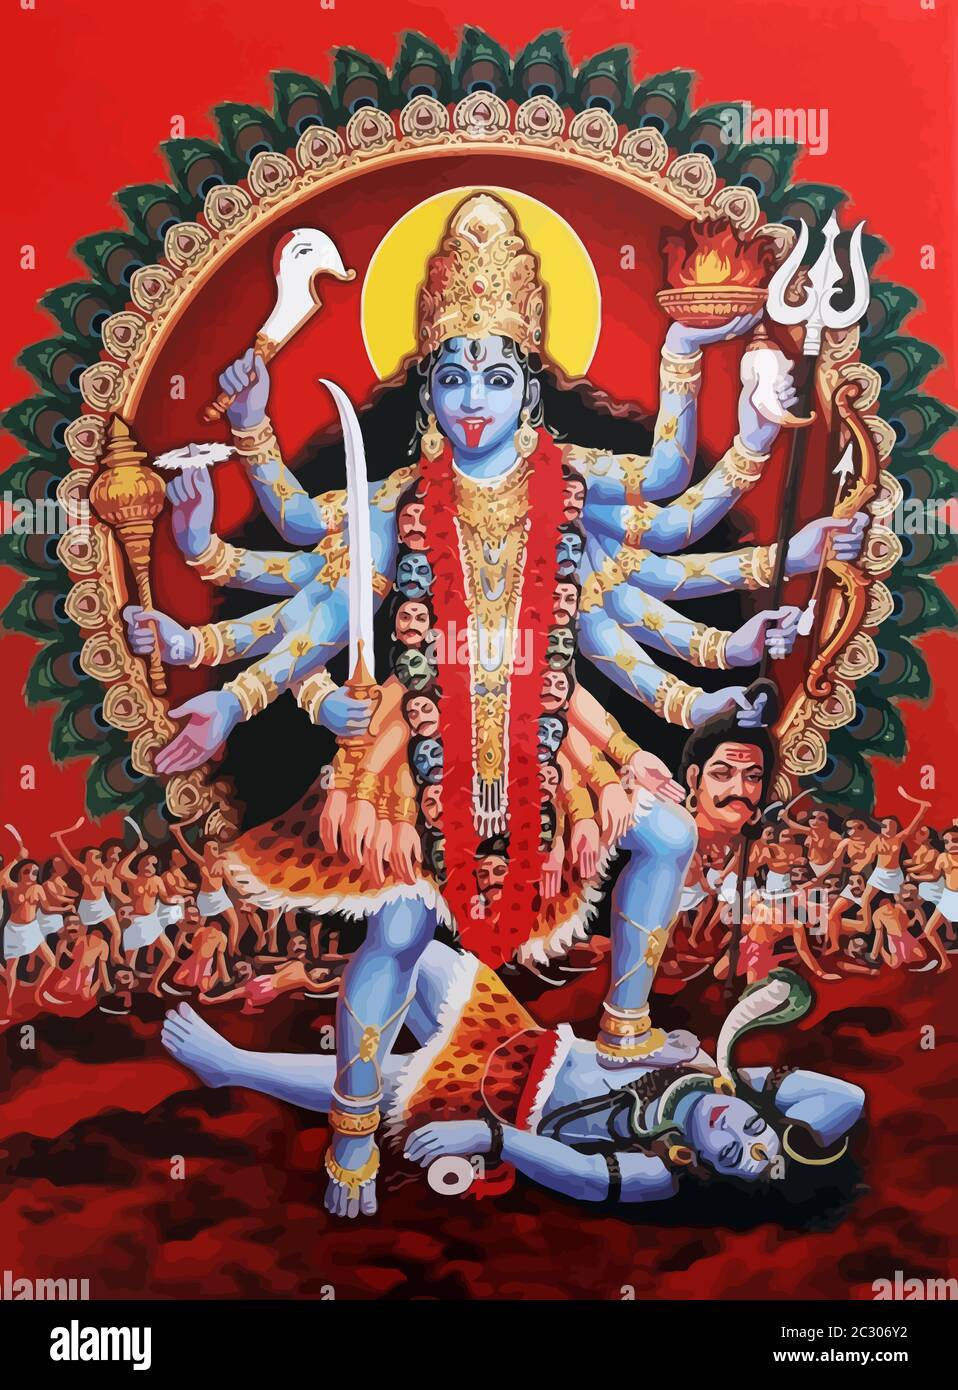 kali goddess of death indian hindu dark siren illustration Stock ...